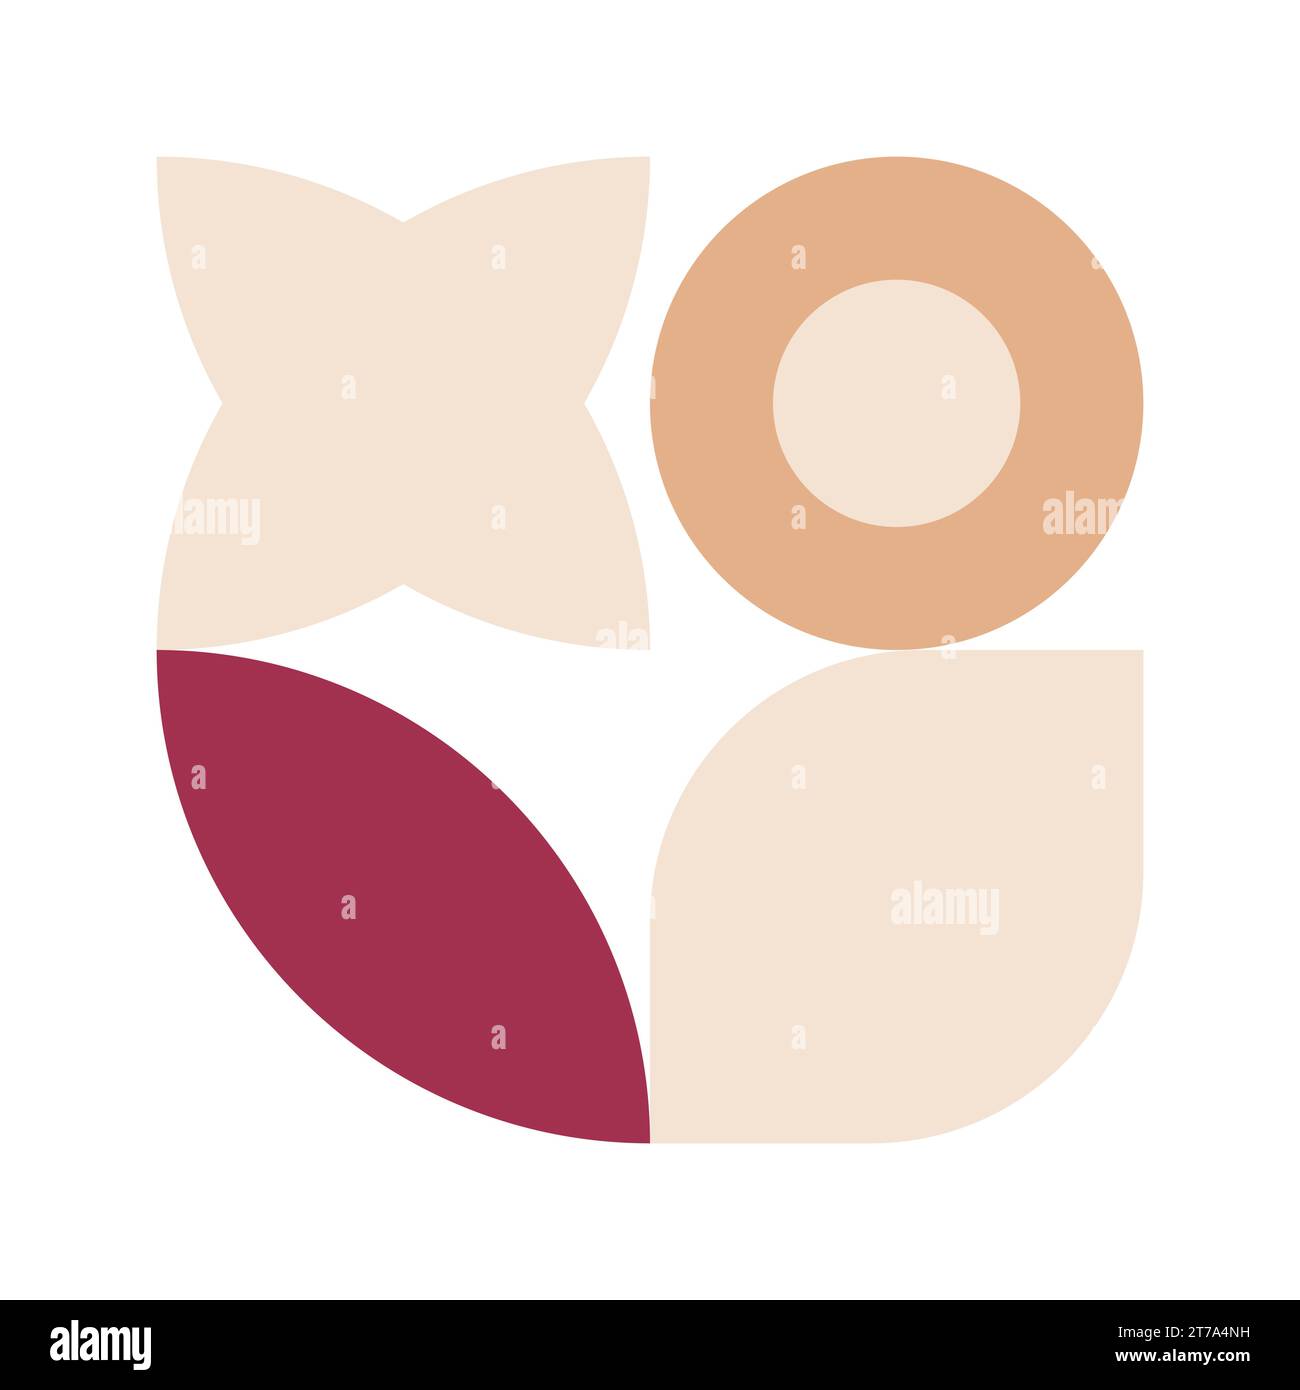 Poster bauhaus alla moda. Forme geometriche astratte vettoriali di colore beige e rosso pastello. Elementi di design semplici e neo-moderni. Stile retrò Illustrazione Vettoriale